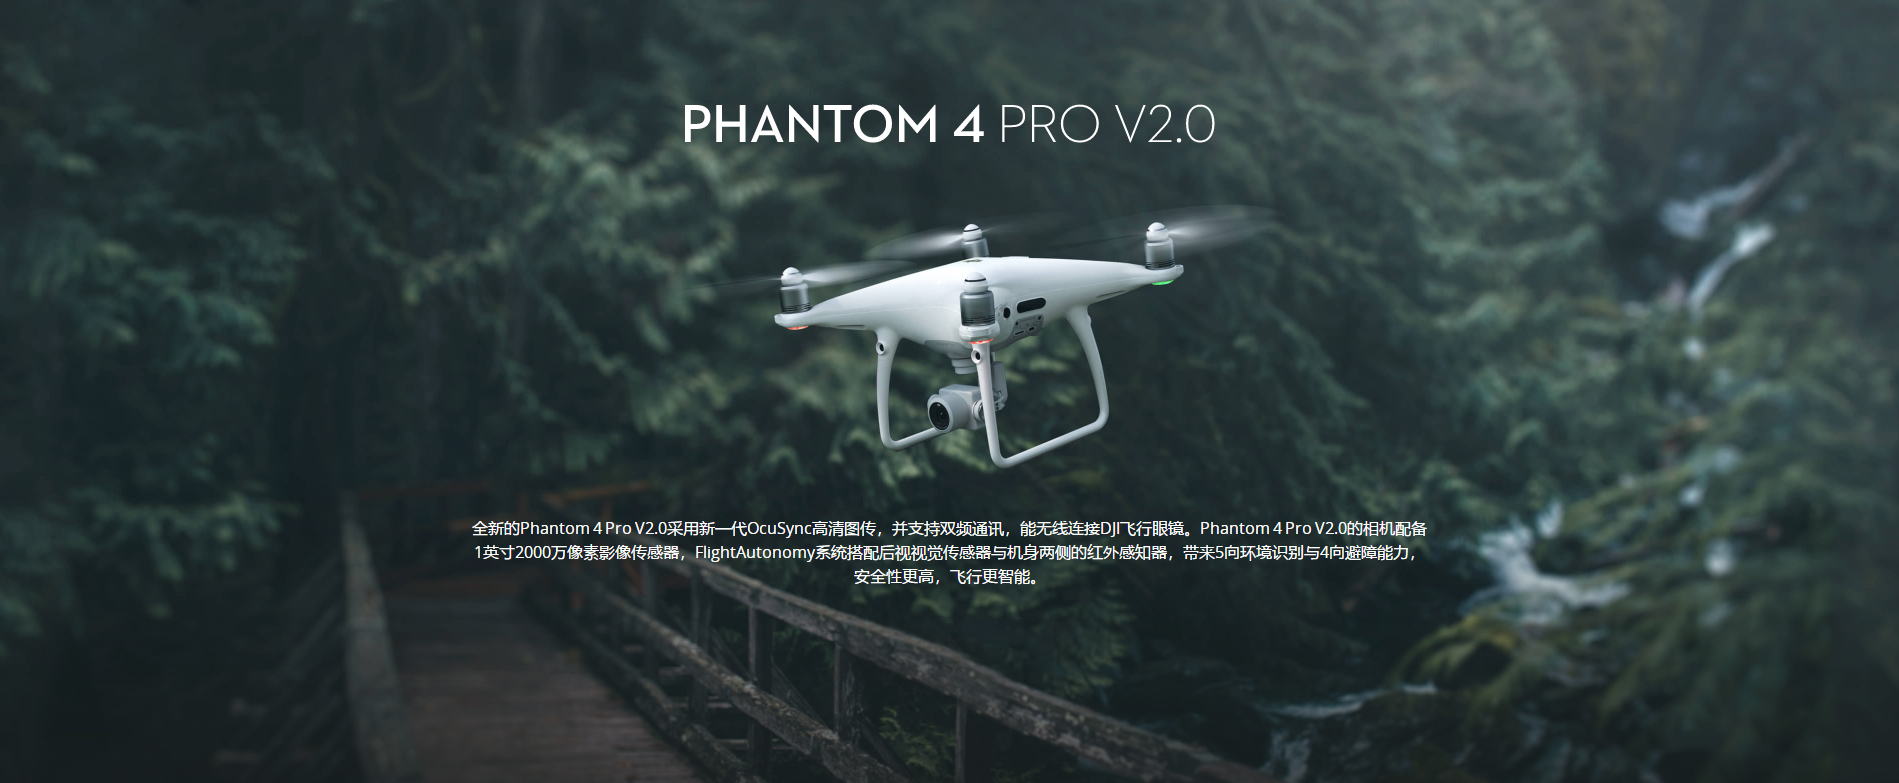 3522vip8888精灵 Phantom 4 Pro V2.0先容